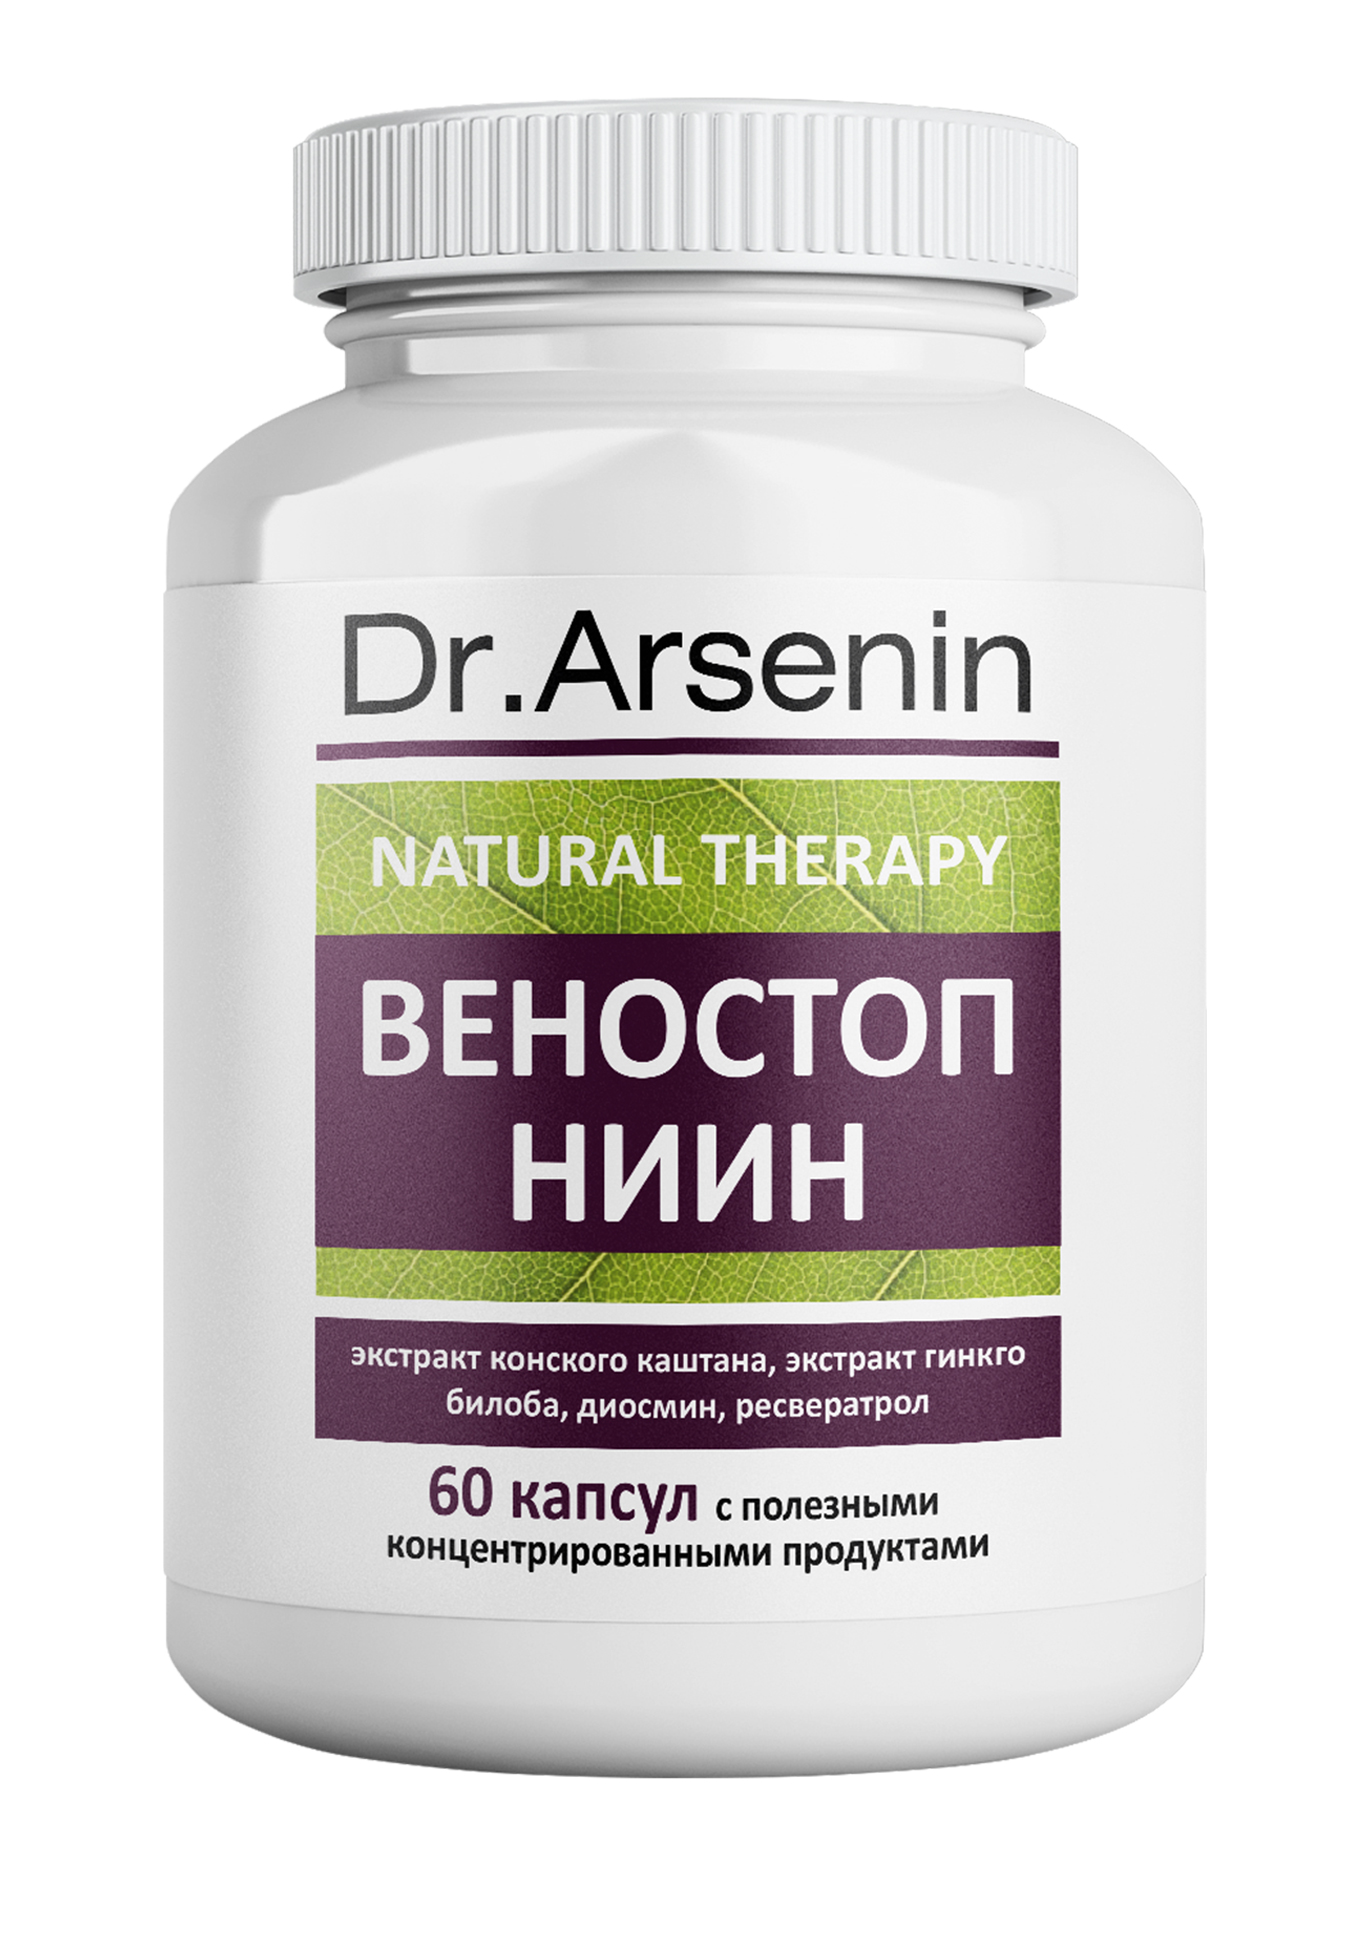 Dr. Arsenin. ВЕНОСТОП НИИН dr arsenin концентрированный пищевой продукт диабенорм